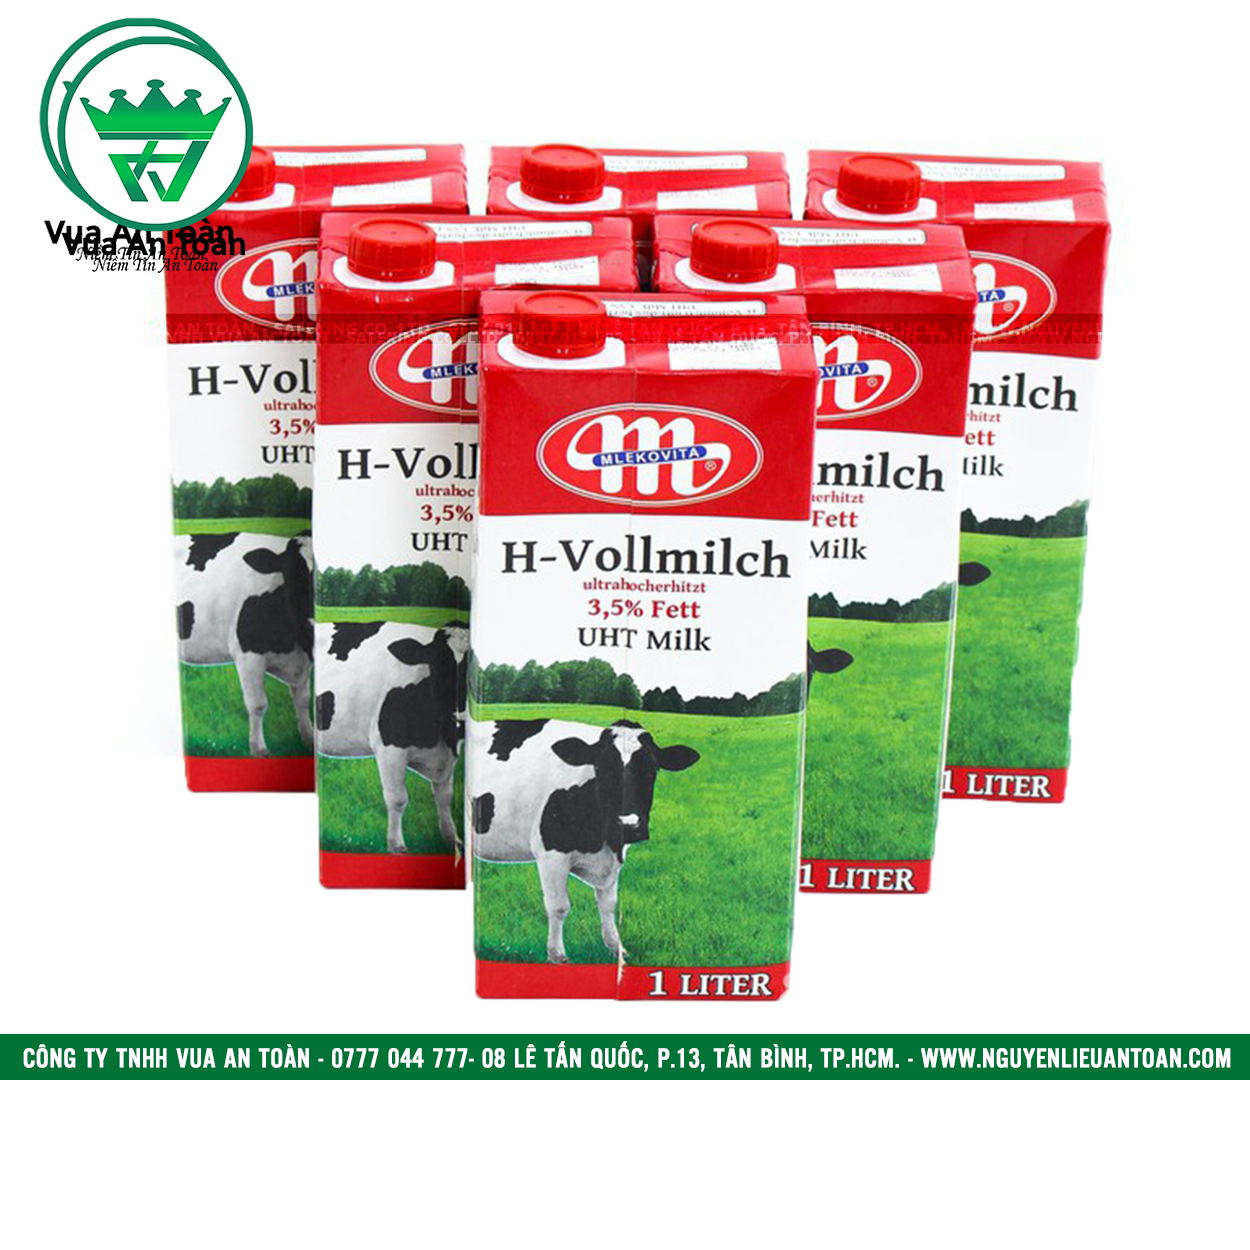 Sữa Tươi Ba lan Mlekovita H-vollmilch UHT Milk